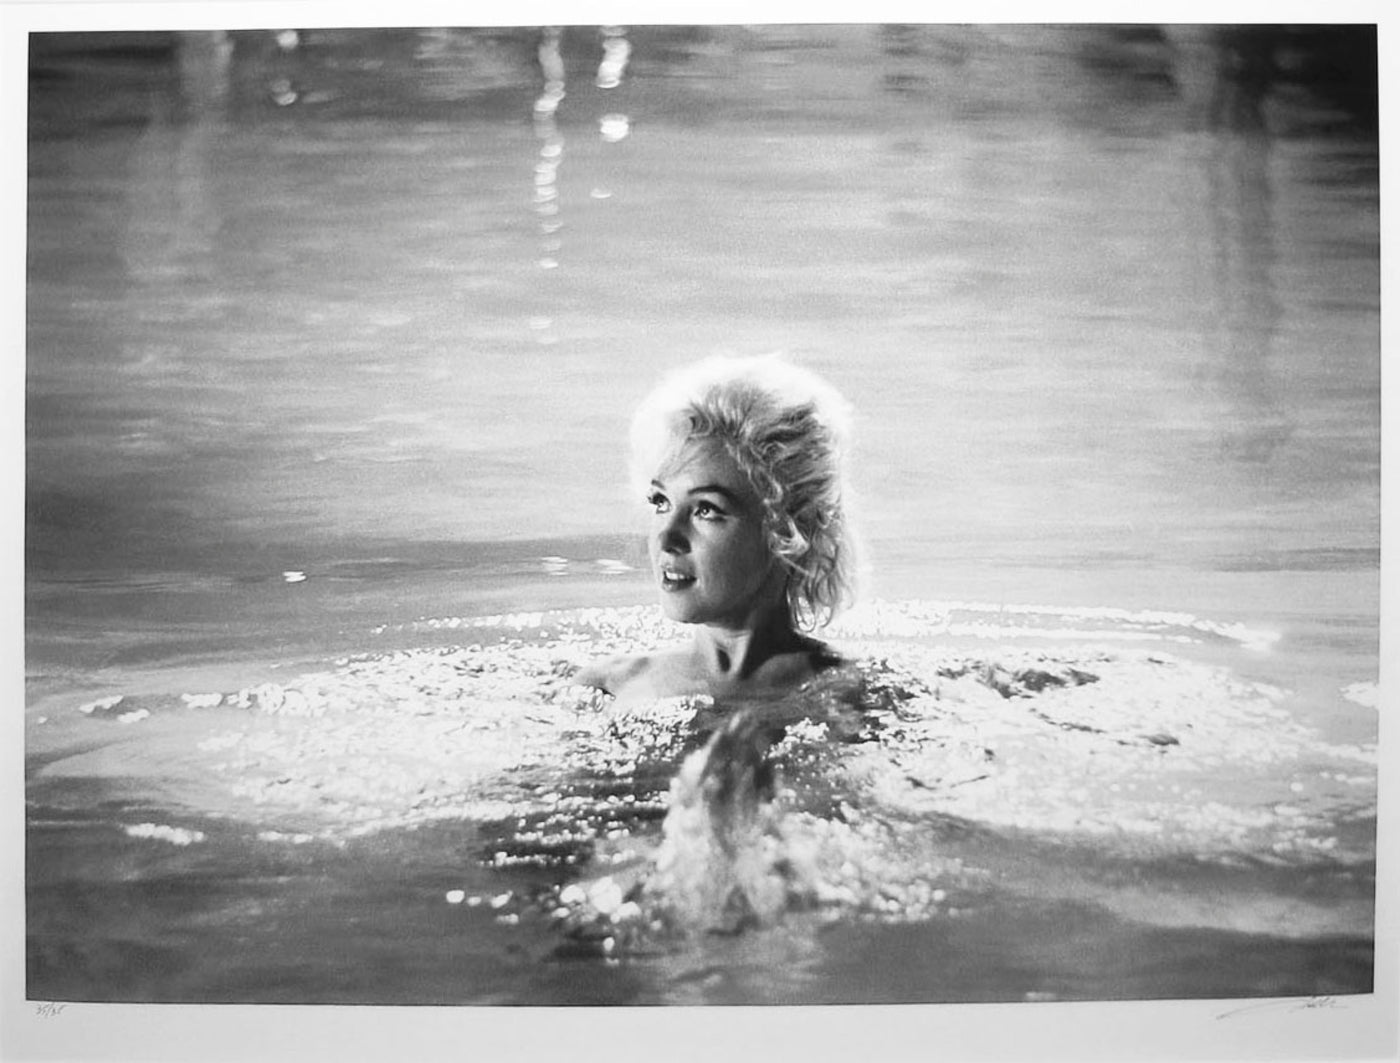 Lawrence Schiller, 'Marilyn Monroe (small): Roll 2 Frame 2', 1962